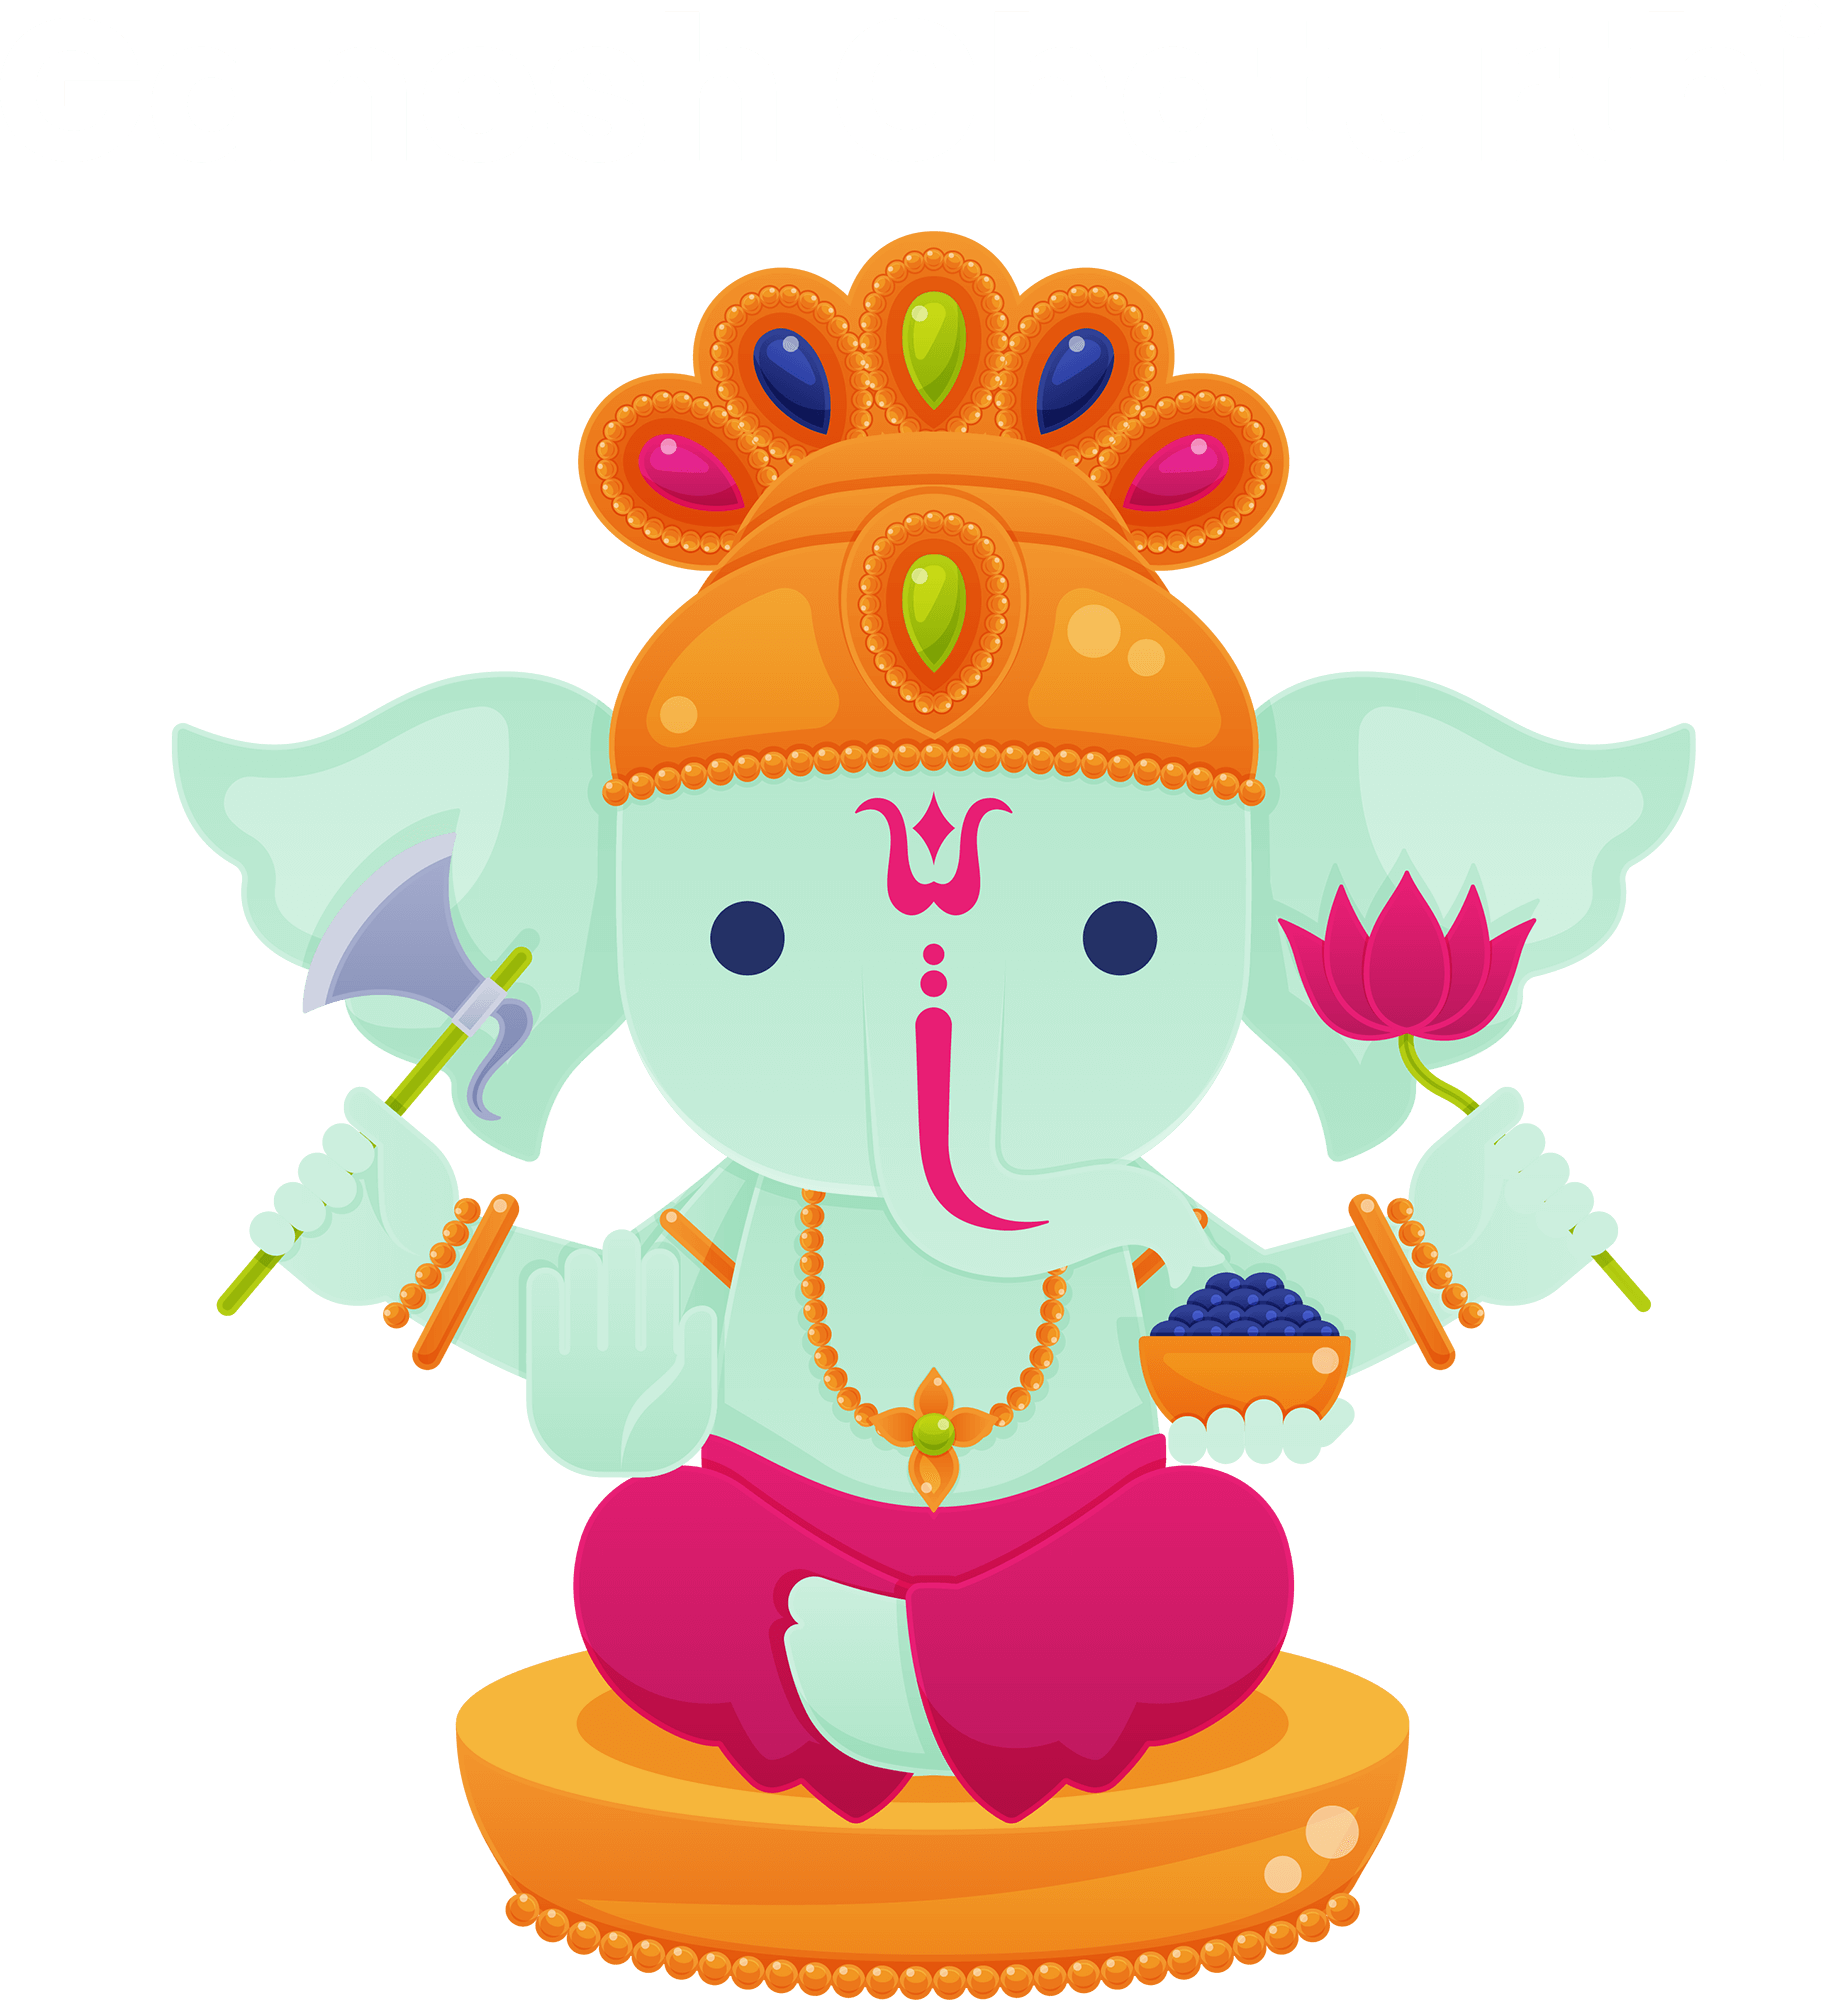 Ganesh Puja Ganesh Chaturthi PNG Image Download Free